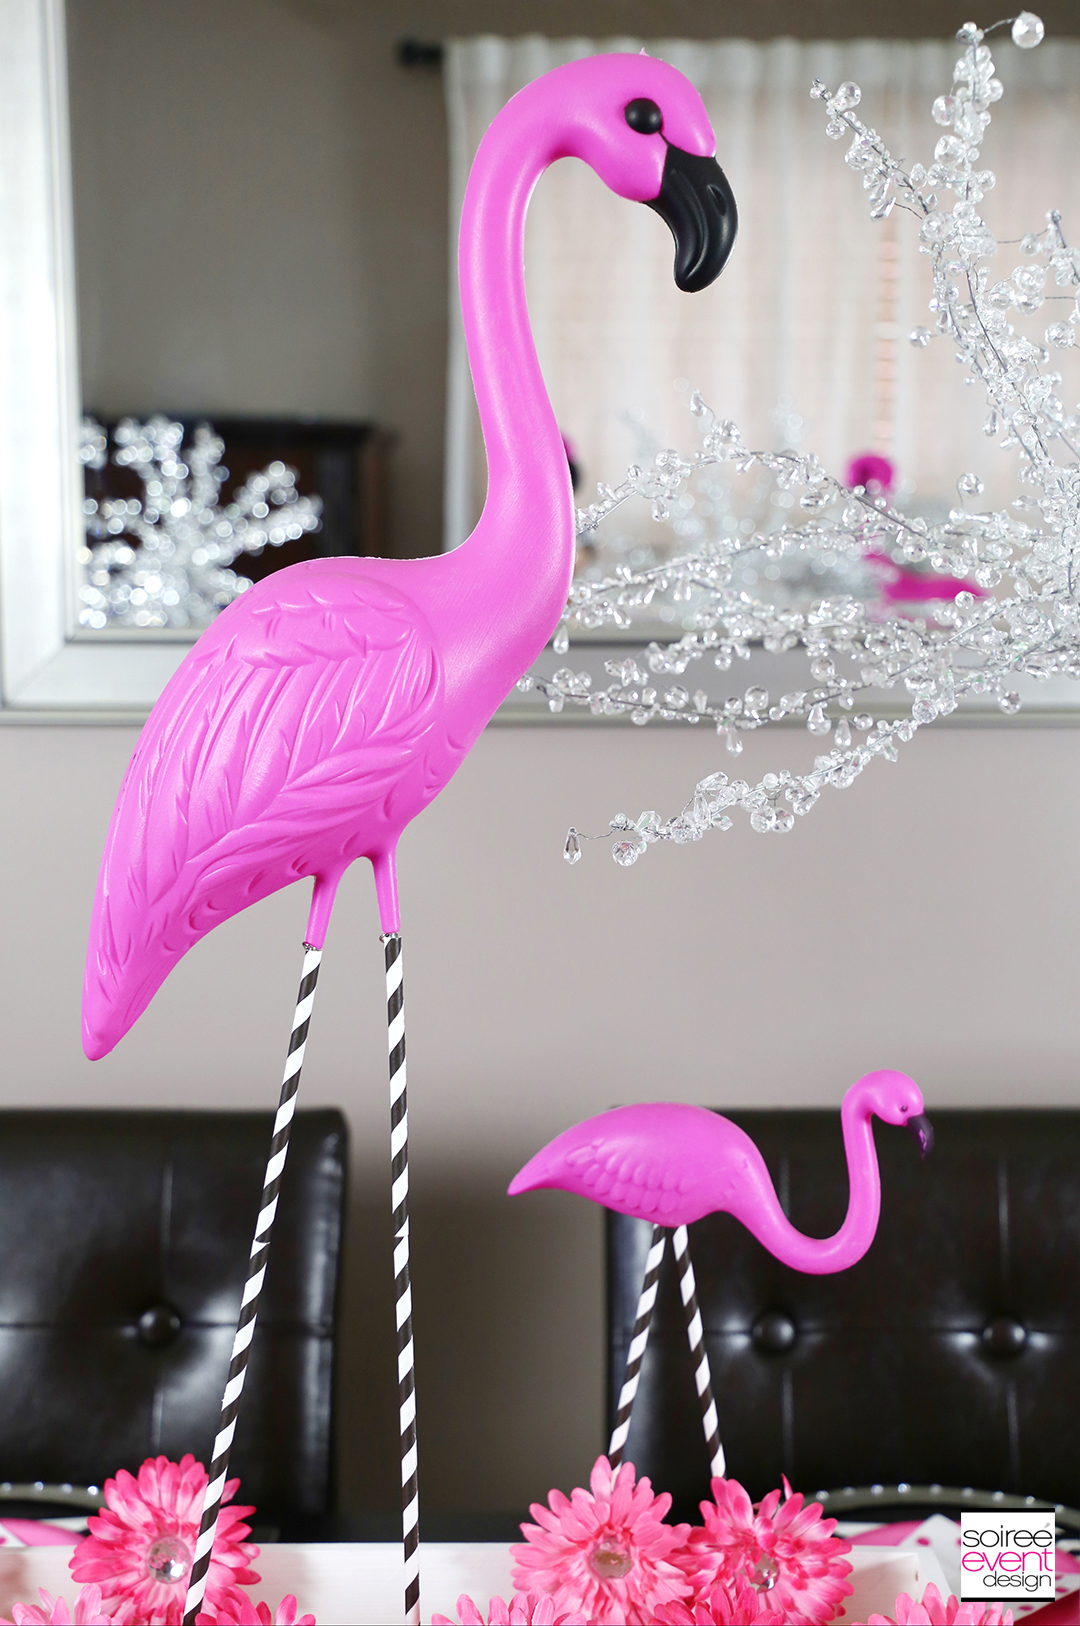 Flamingo Party Tablescape